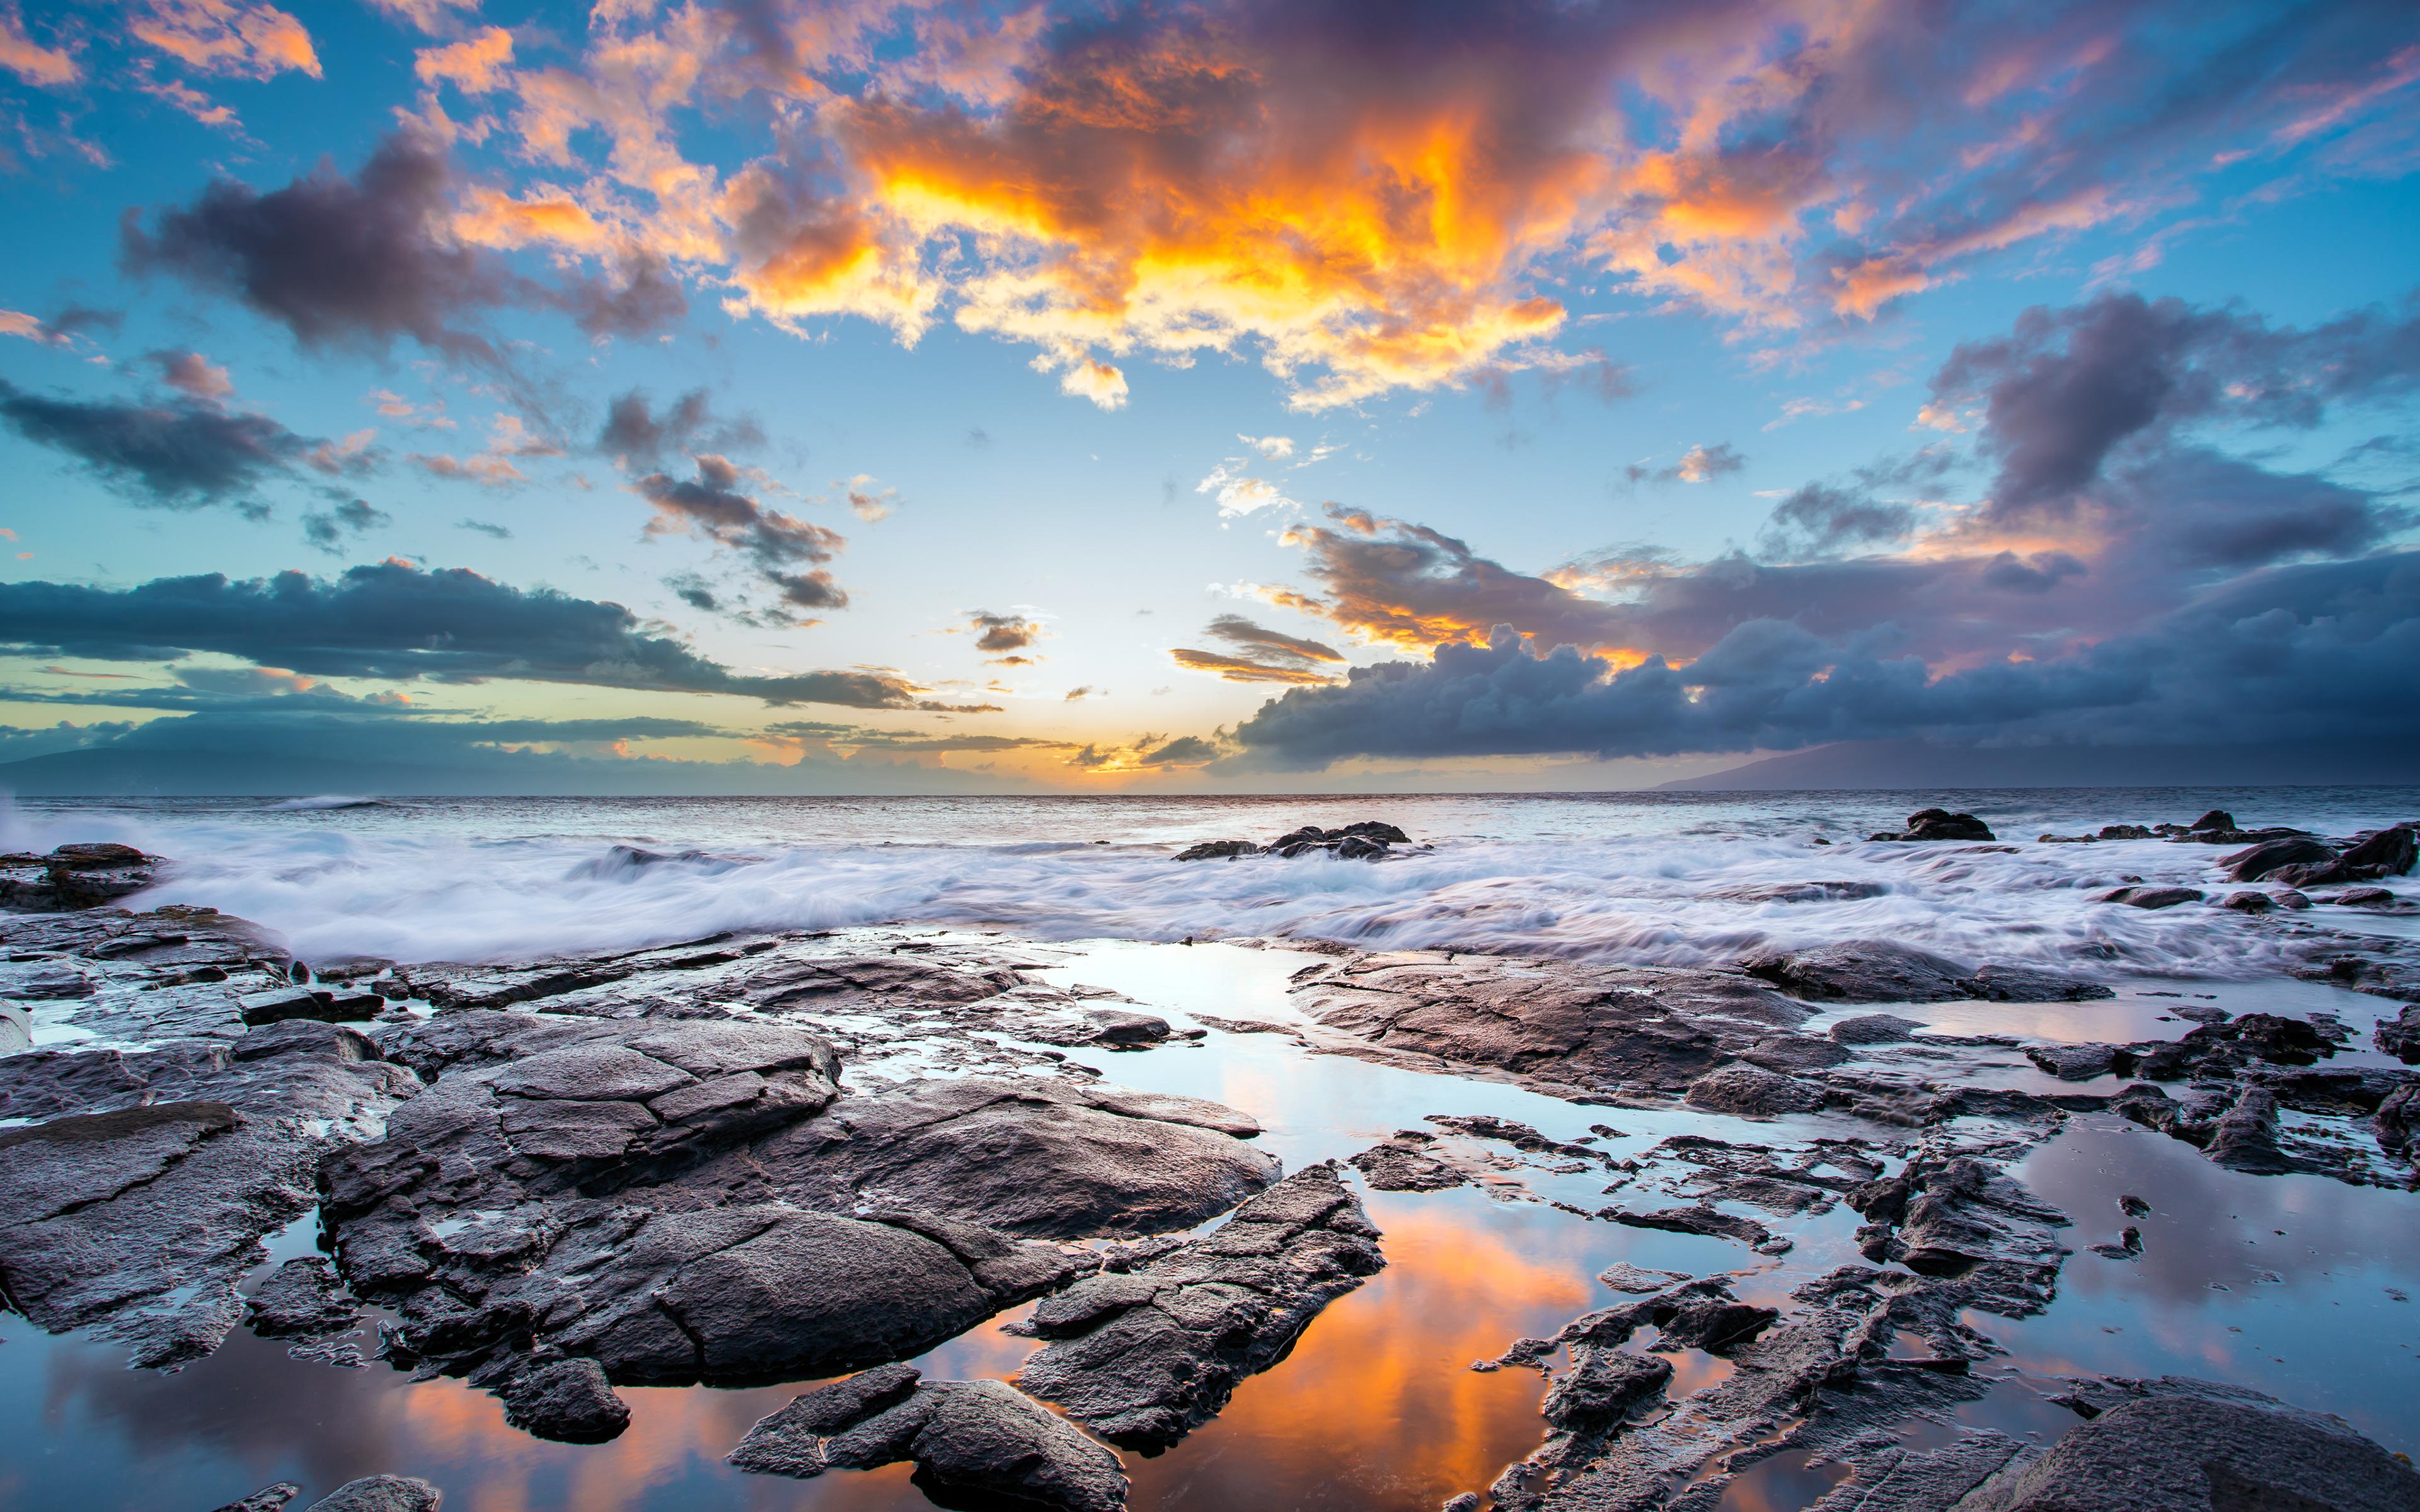 Beautiful sky and rocky shore on the island of Maui, Hawaii